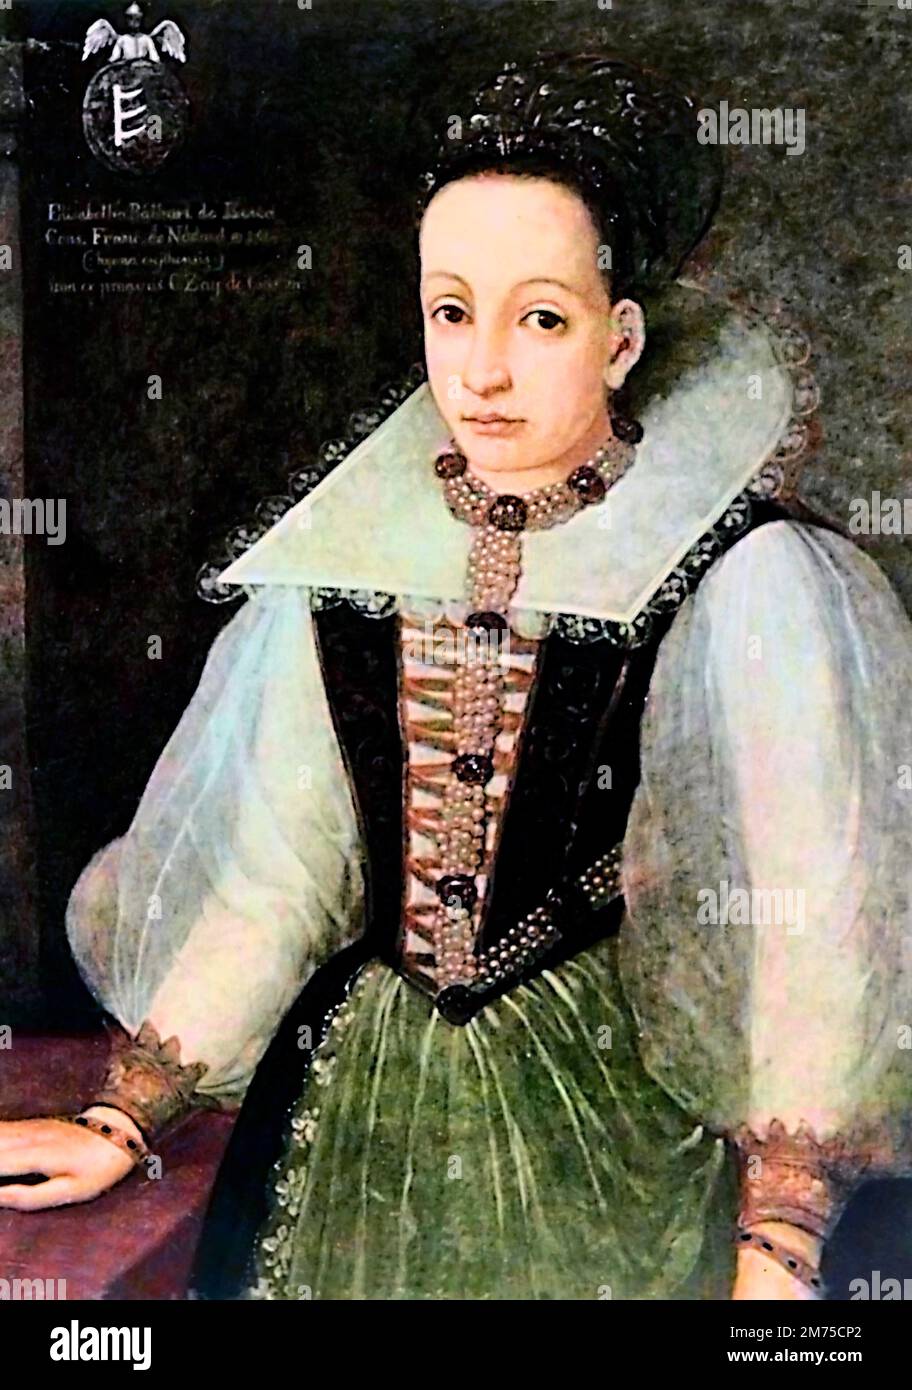 Elisabeth Báthory. Das Porträt der Gräfin Elizabeth Báthory de Ecsed (1560-1614). Bathory war eine ungarische Adlige und mutmaßlicher Serienmörder aus der Familie Báthory, die im Königreich Ungarn (jetzt Slowakei) Land besaß. Sie und vier ihrer Diener wurden beschuldigt, zwischen 1590 und 1610 Hunderte von Mädchen und Frauen gefoltert und getötet zu haben. Ihre Diener wurden vor Gericht gestellt und verurteilt, während Báthory bis zu ihrem Tod eingesperrt war. Stockfoto